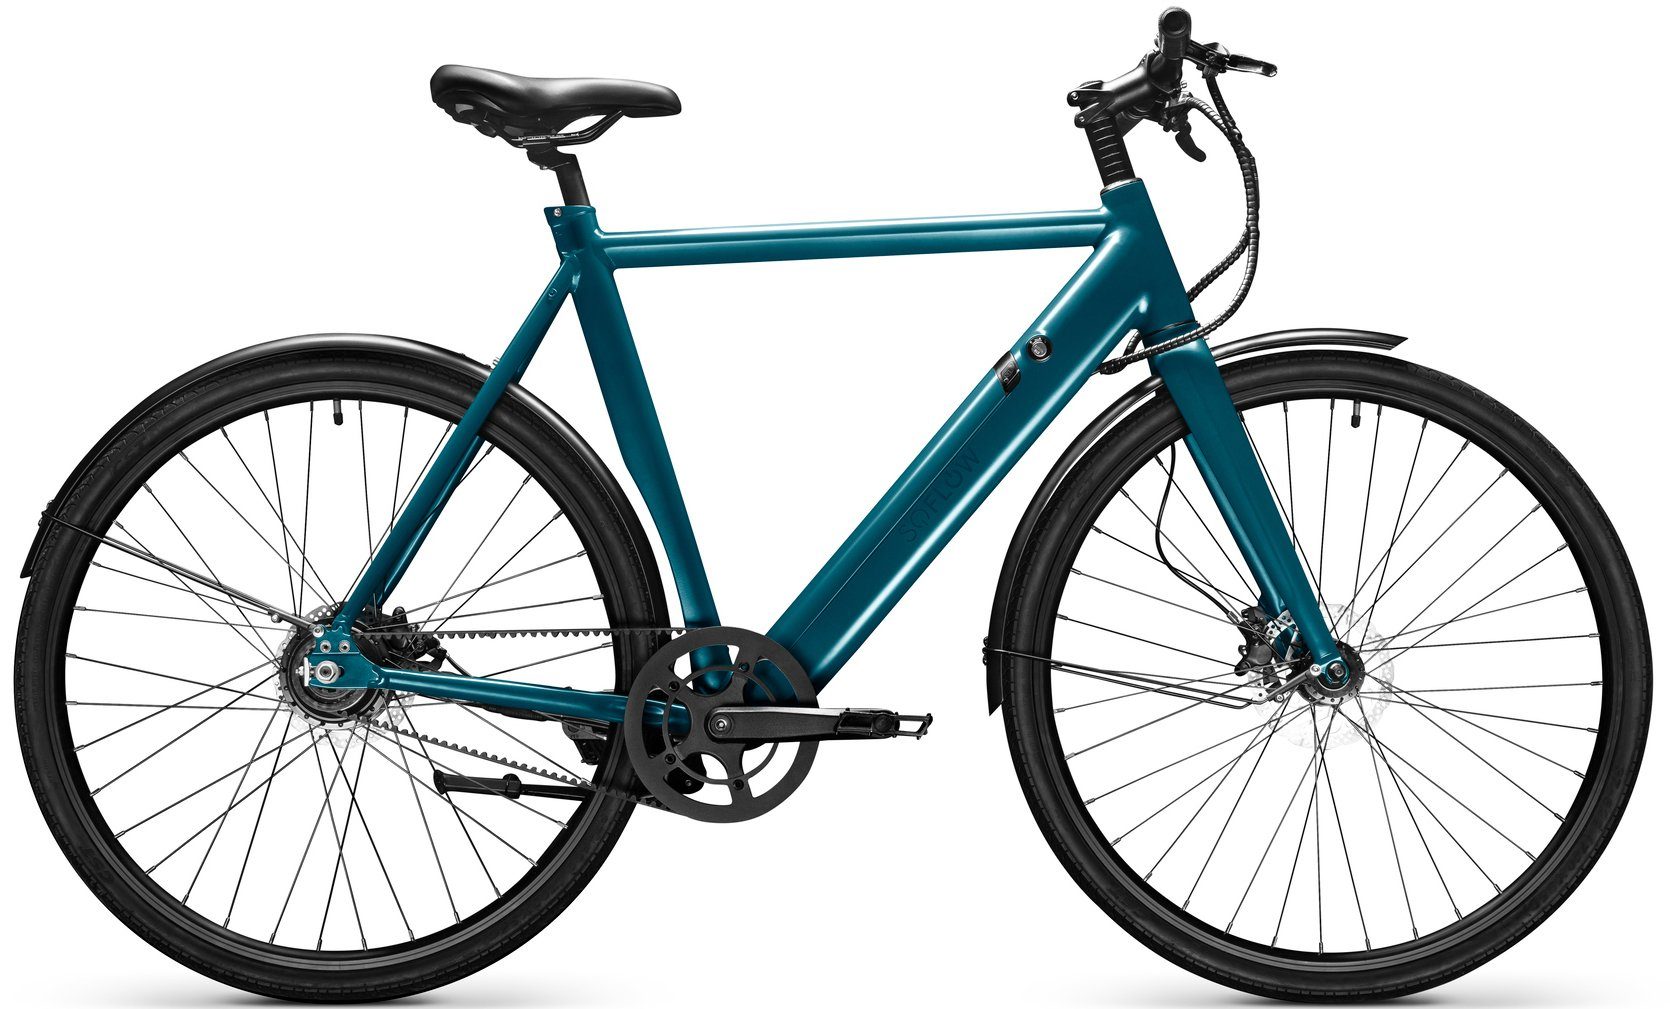 soflow E-Bike SO Bike, ohne Schaltung, Heckmotor, Pedelec für Damen u. Herren, Carbon Drive Riemen-Antriebssystem